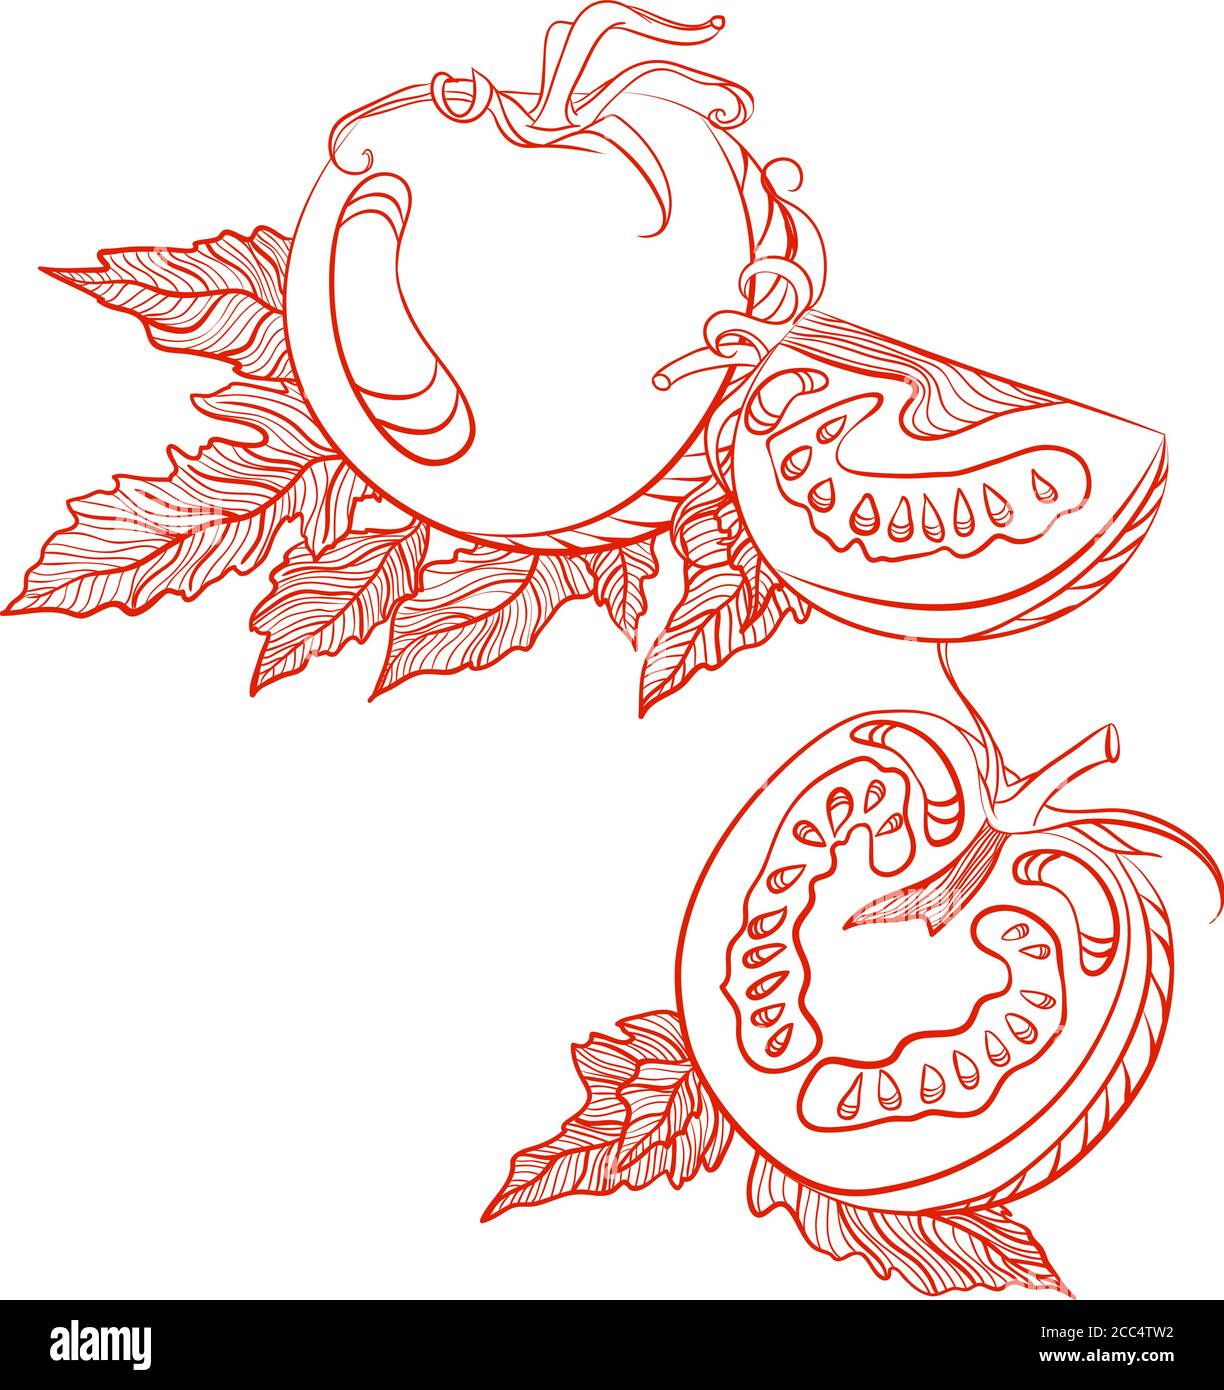 Einfarbige Zeichnung von Tomaten. Vektor handgezeichnete Illustration isoliert auf weißem Hintergrund Stock Vektor